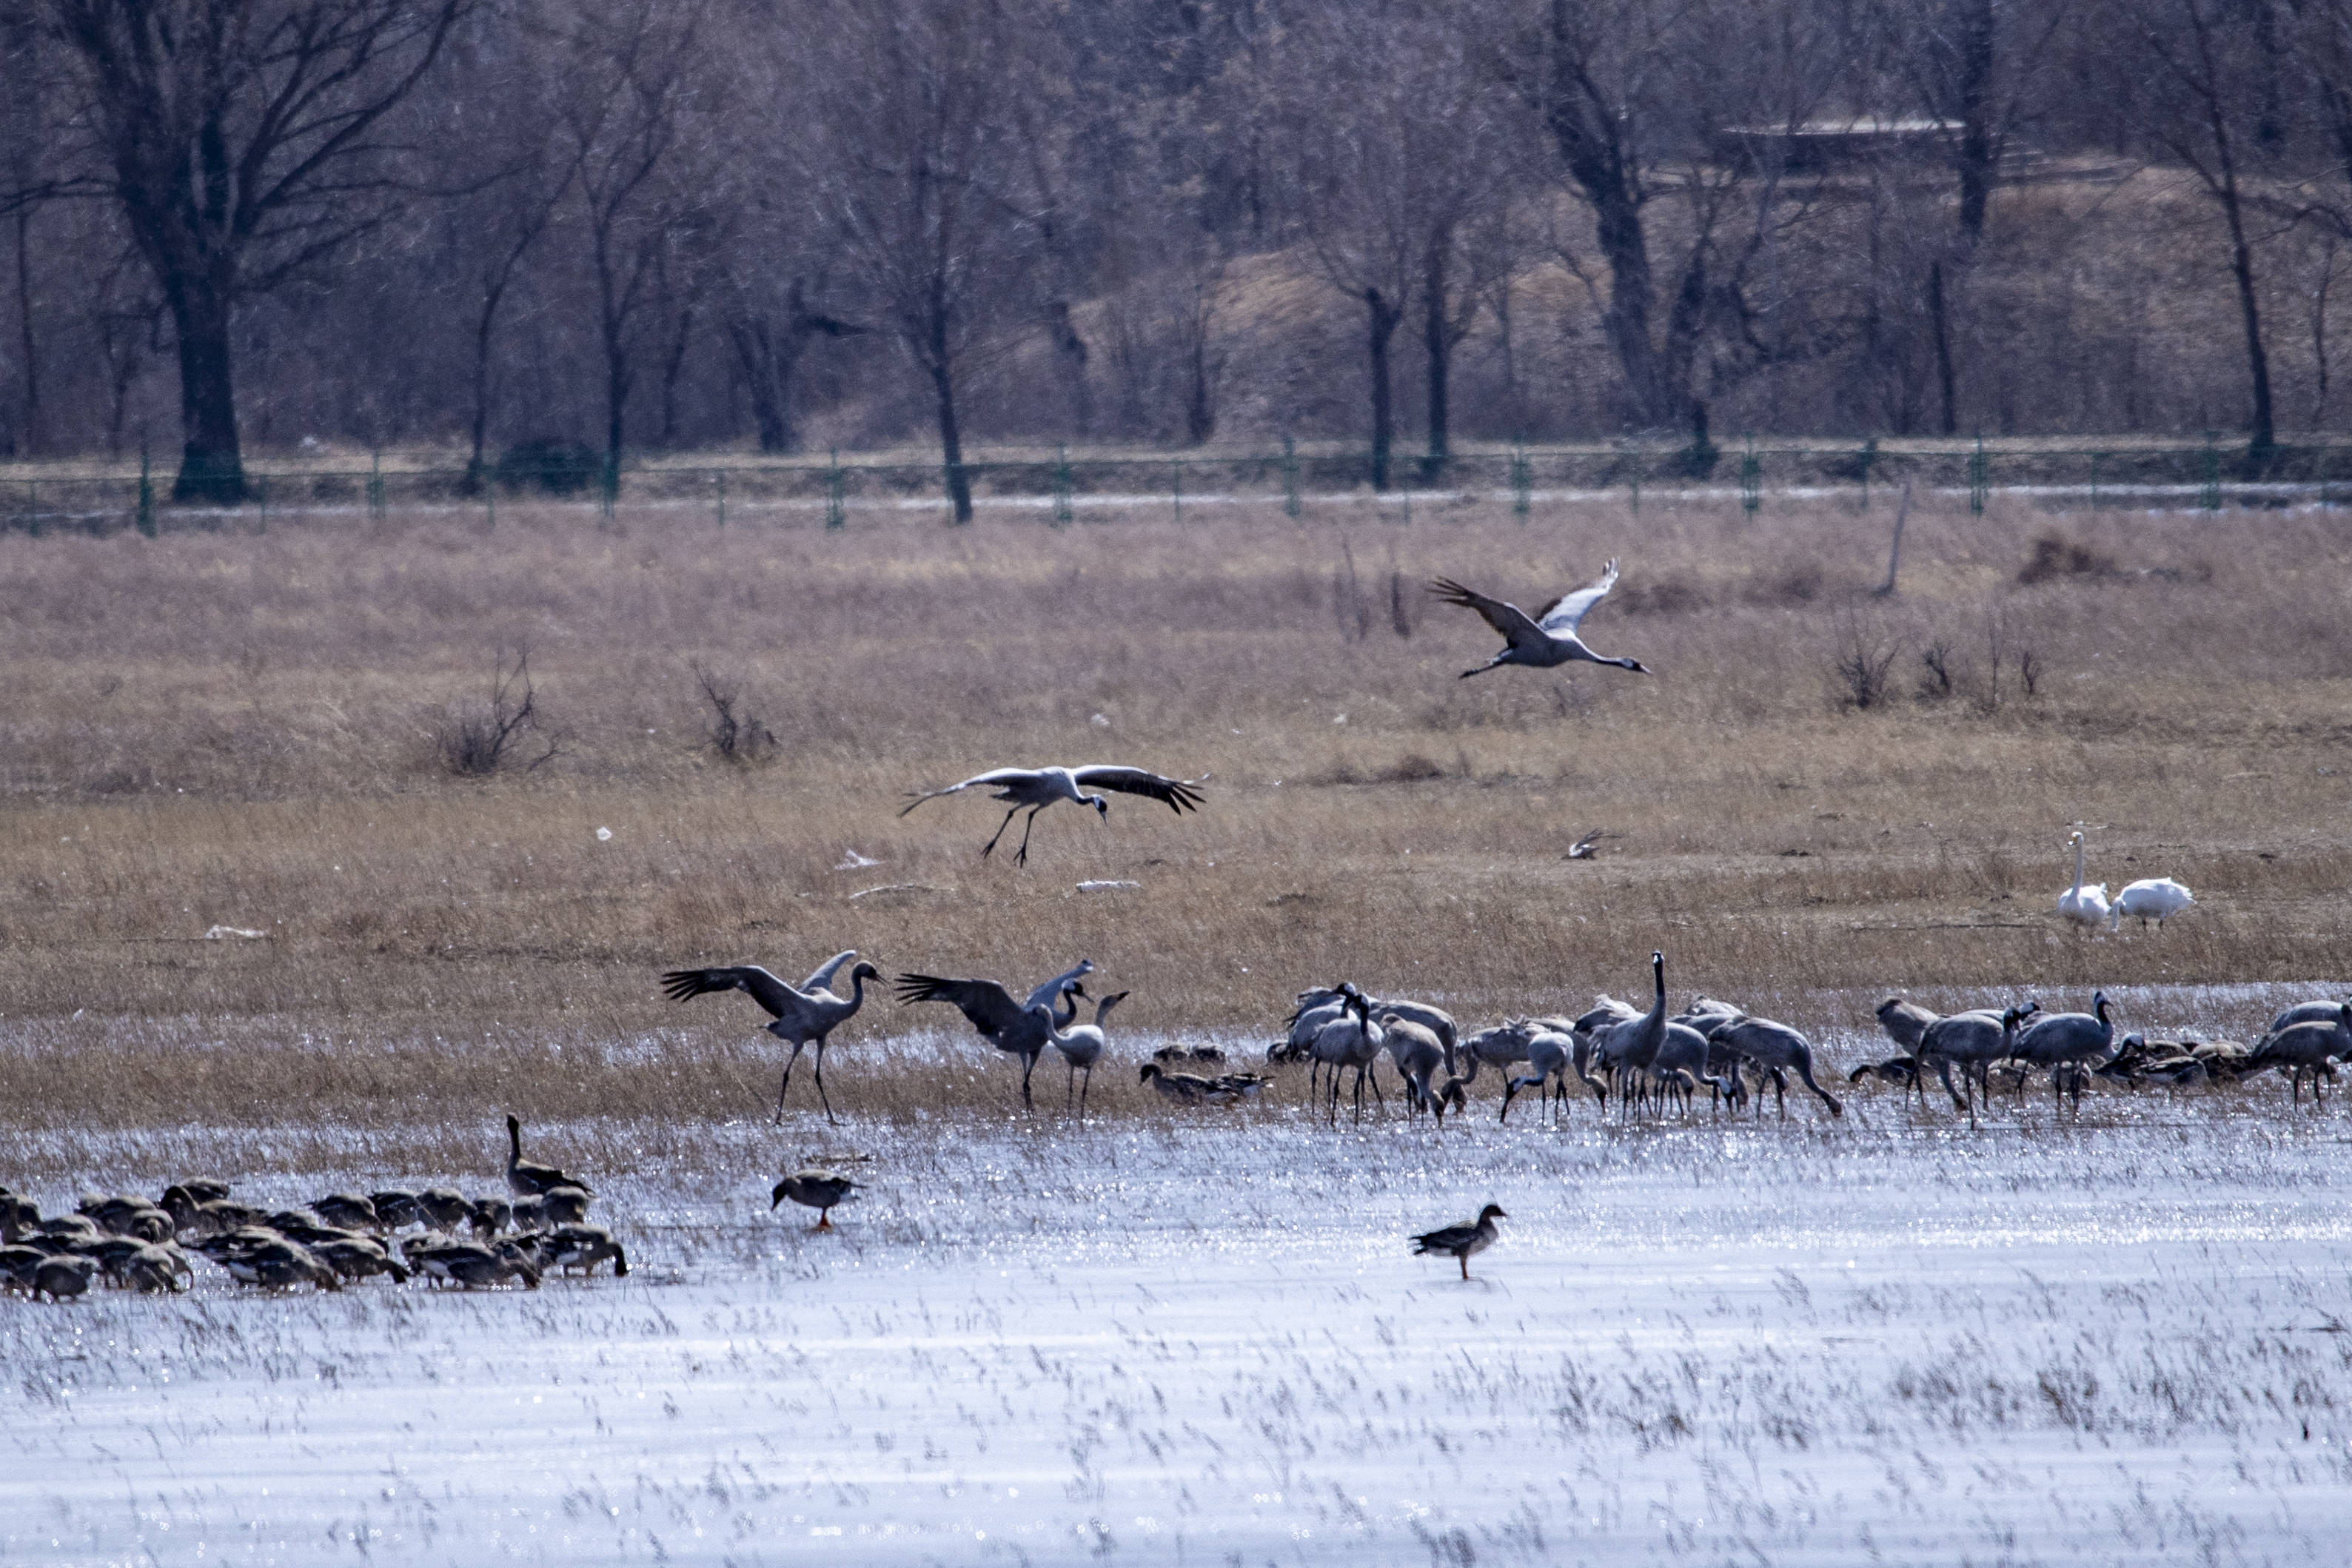 大批候鸟飞抵野鸭湖 延庆将迎春季迁徙高峰